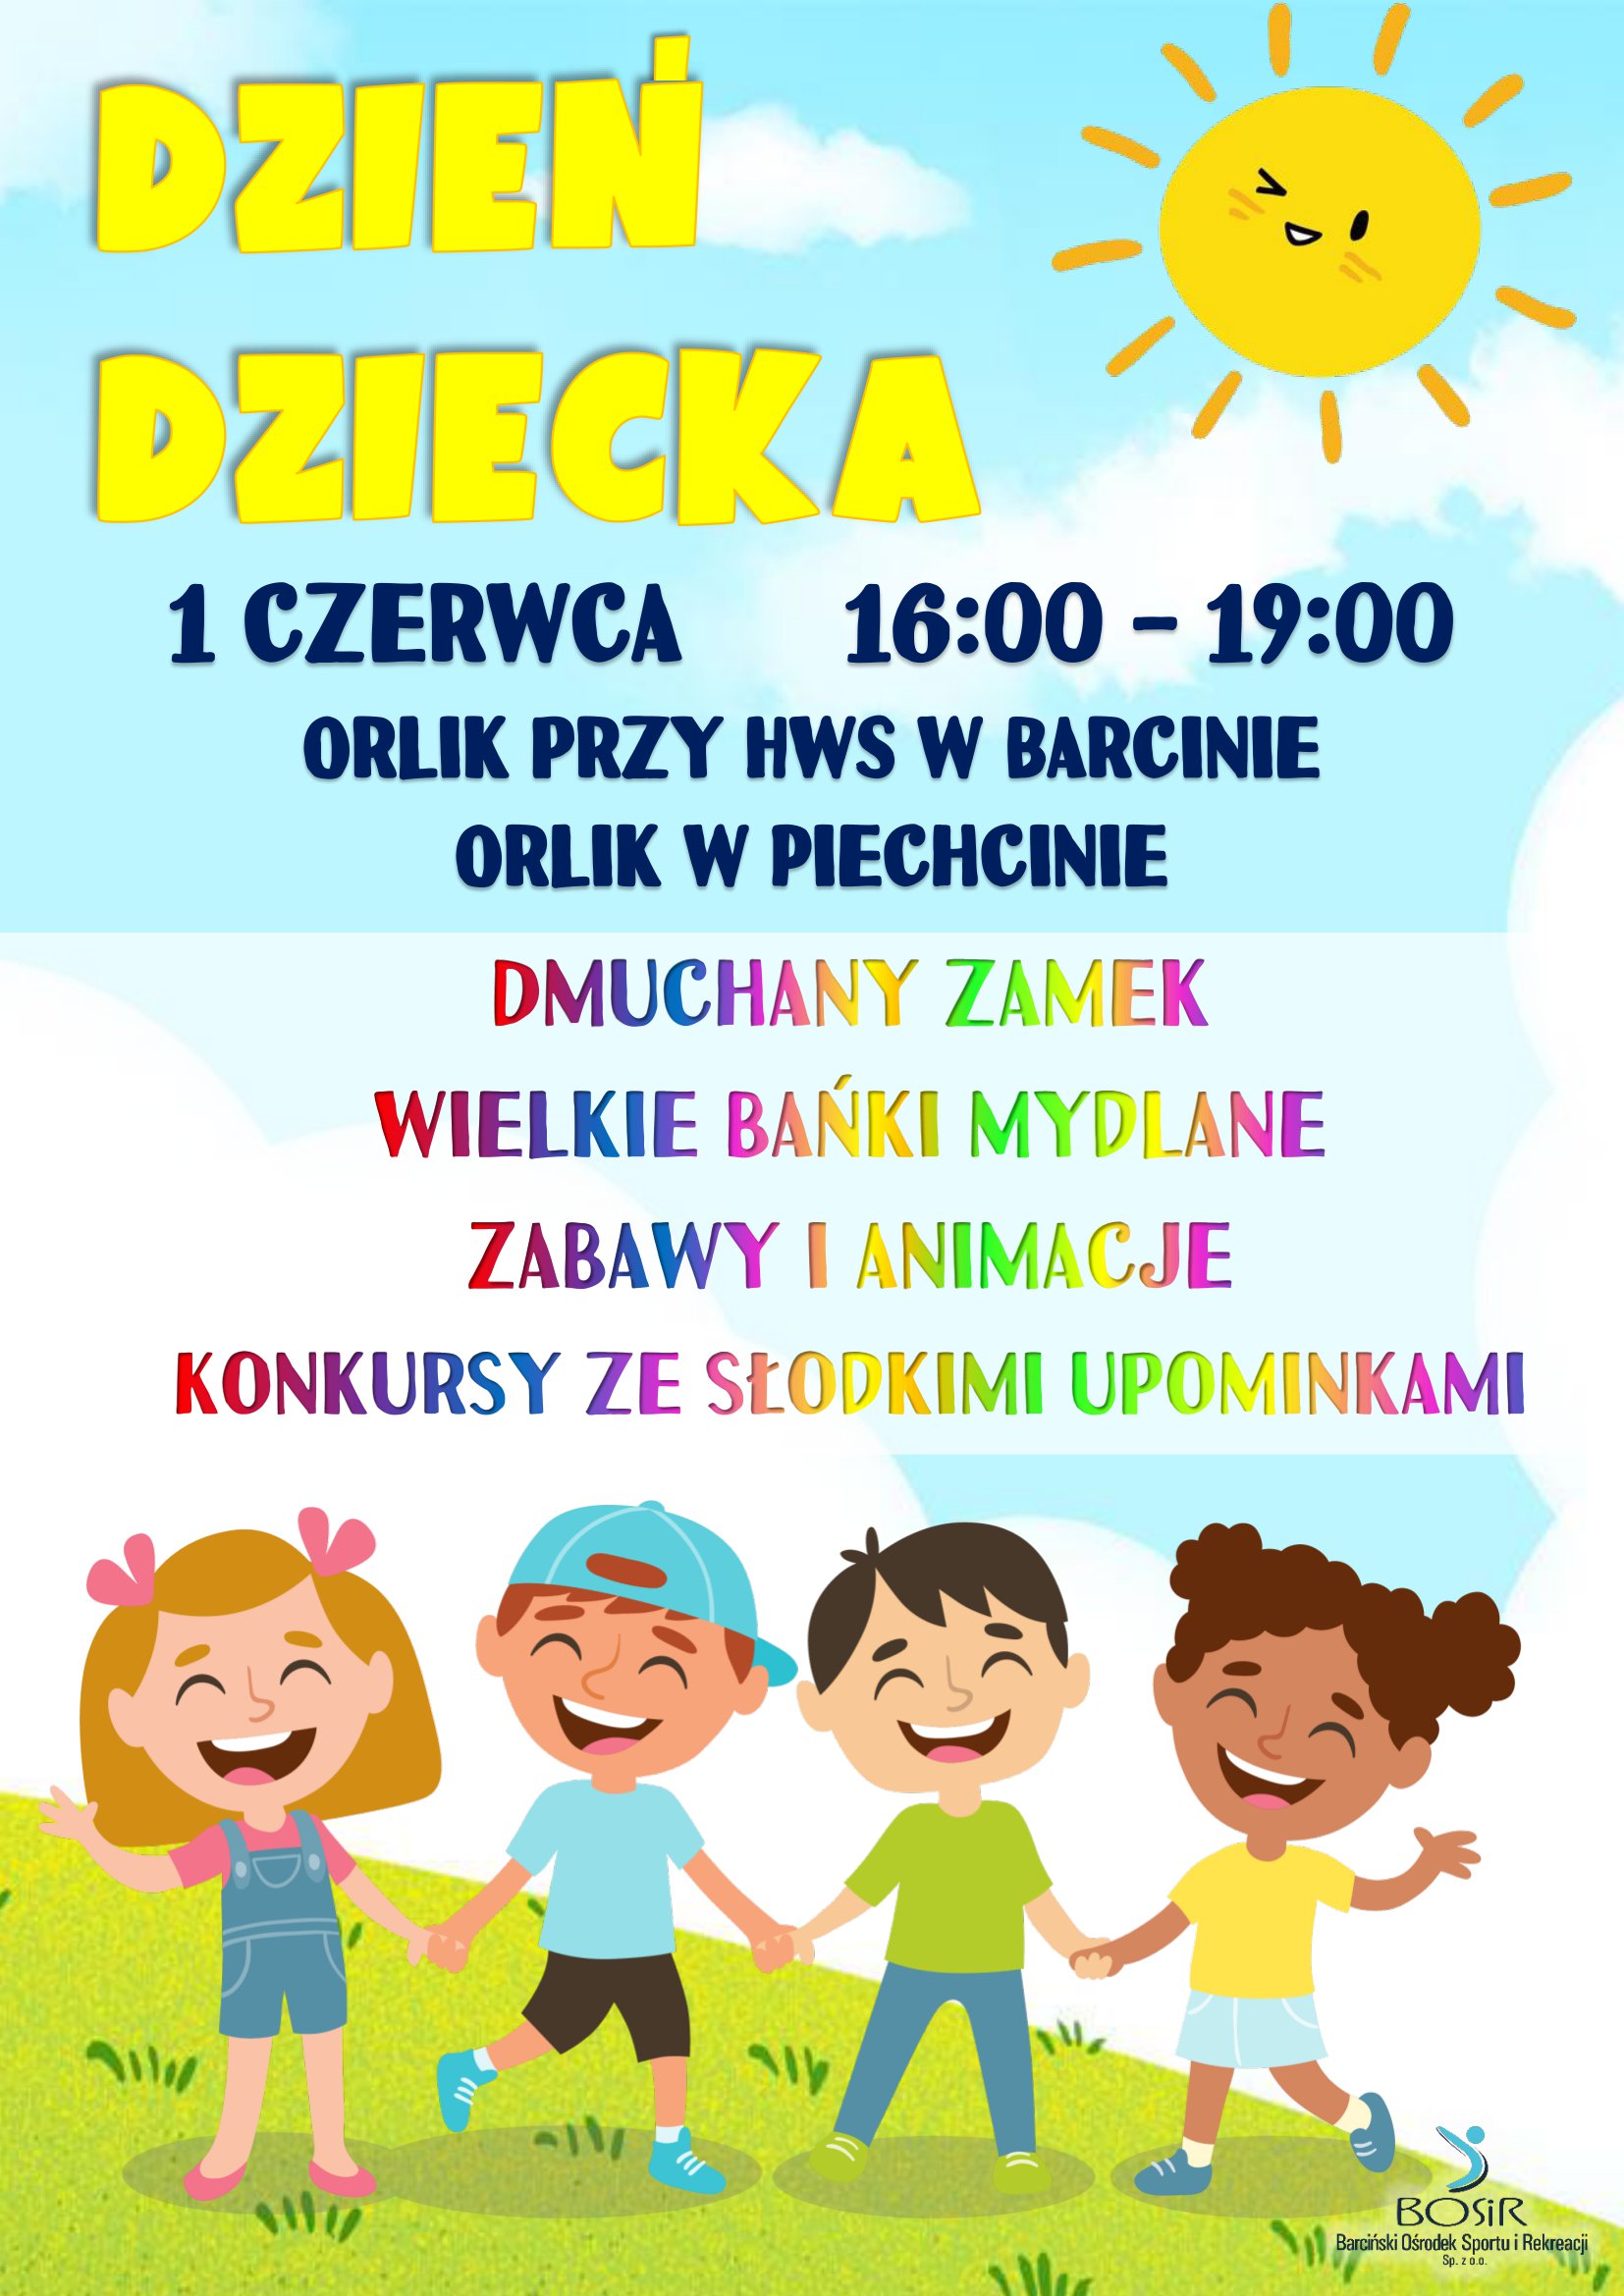 You are currently viewing Zaproszenie na Dzień Dziecka!